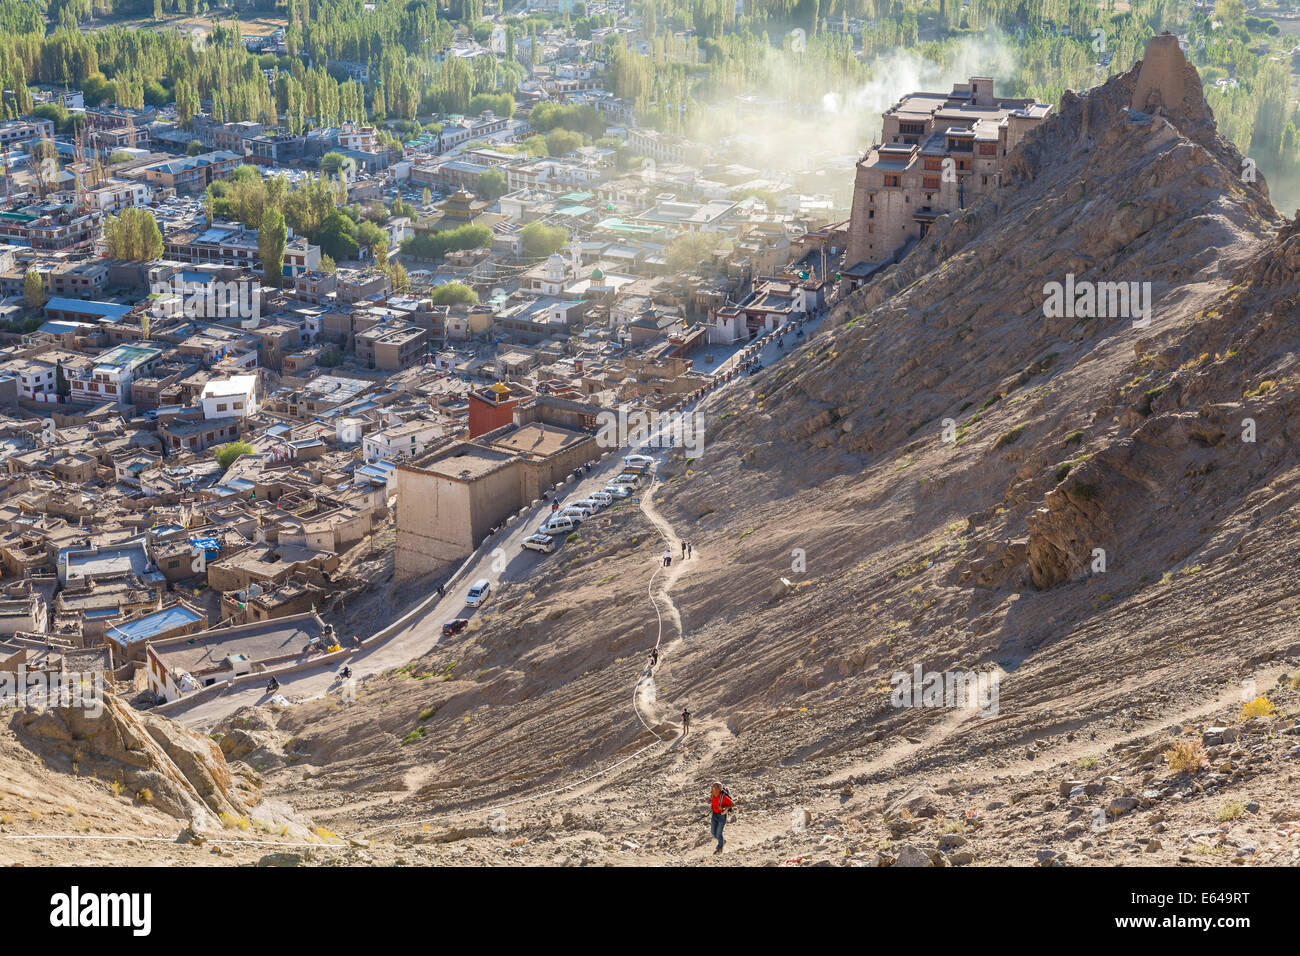 Man climbing up to Tsemo Gompa from Leh Palace, Leh, Ladakh, India Stock Photo